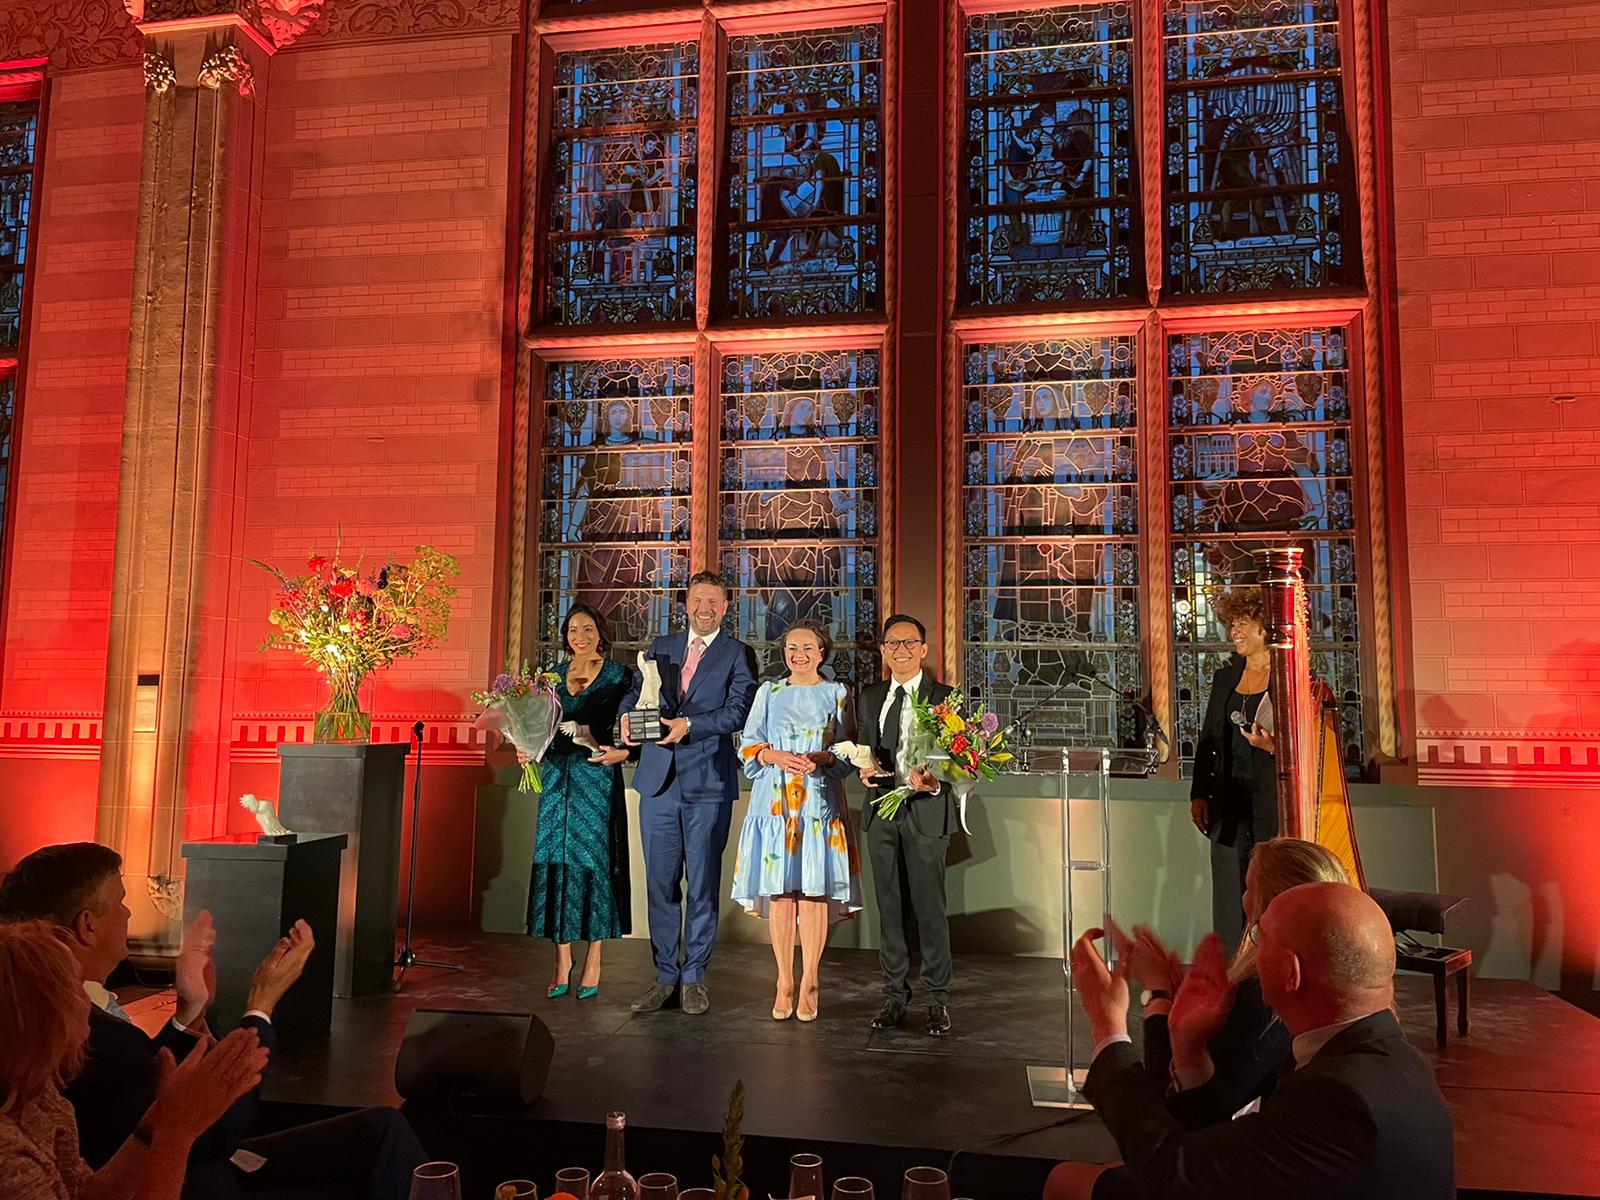 De winnaar en andere genomineerden voor de Young Captain Award staan op het podium met Alexandra van Huffelen. Op de achtergrond een groot glas in lood raam